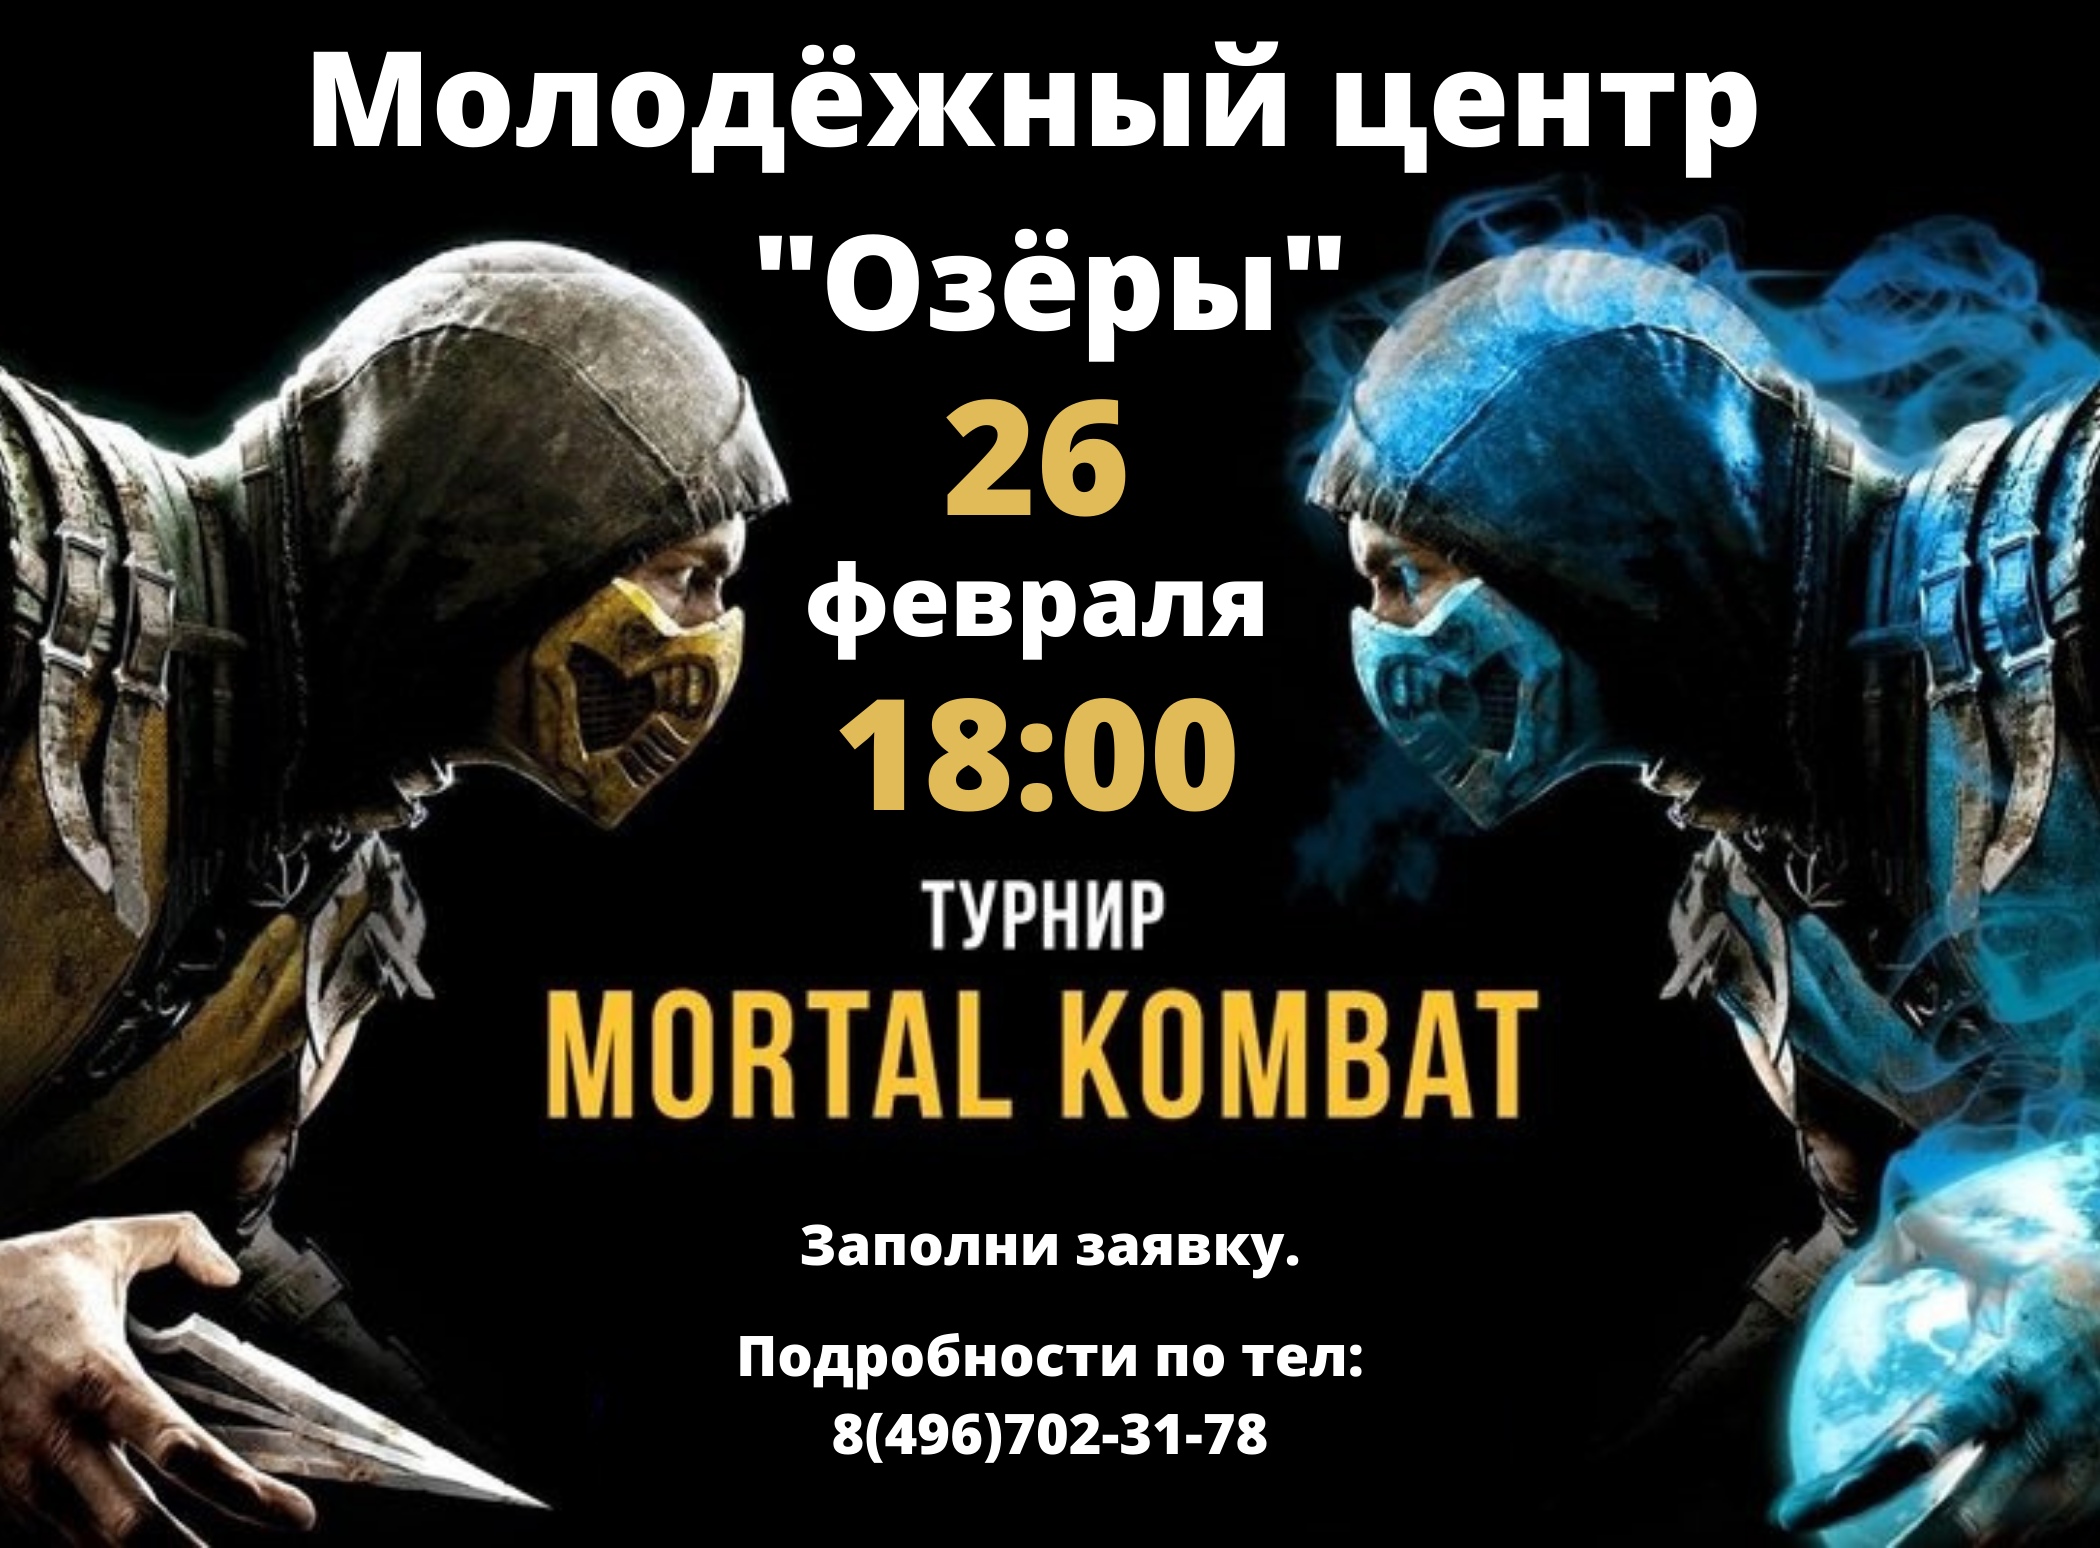 КОЛОМНАСПОРТ - Спорт в Коломне Молодёжный центр «Озёры» приглашает на турнир по киберспортивной дисциплине «MORTAL KOMBAT 11»  